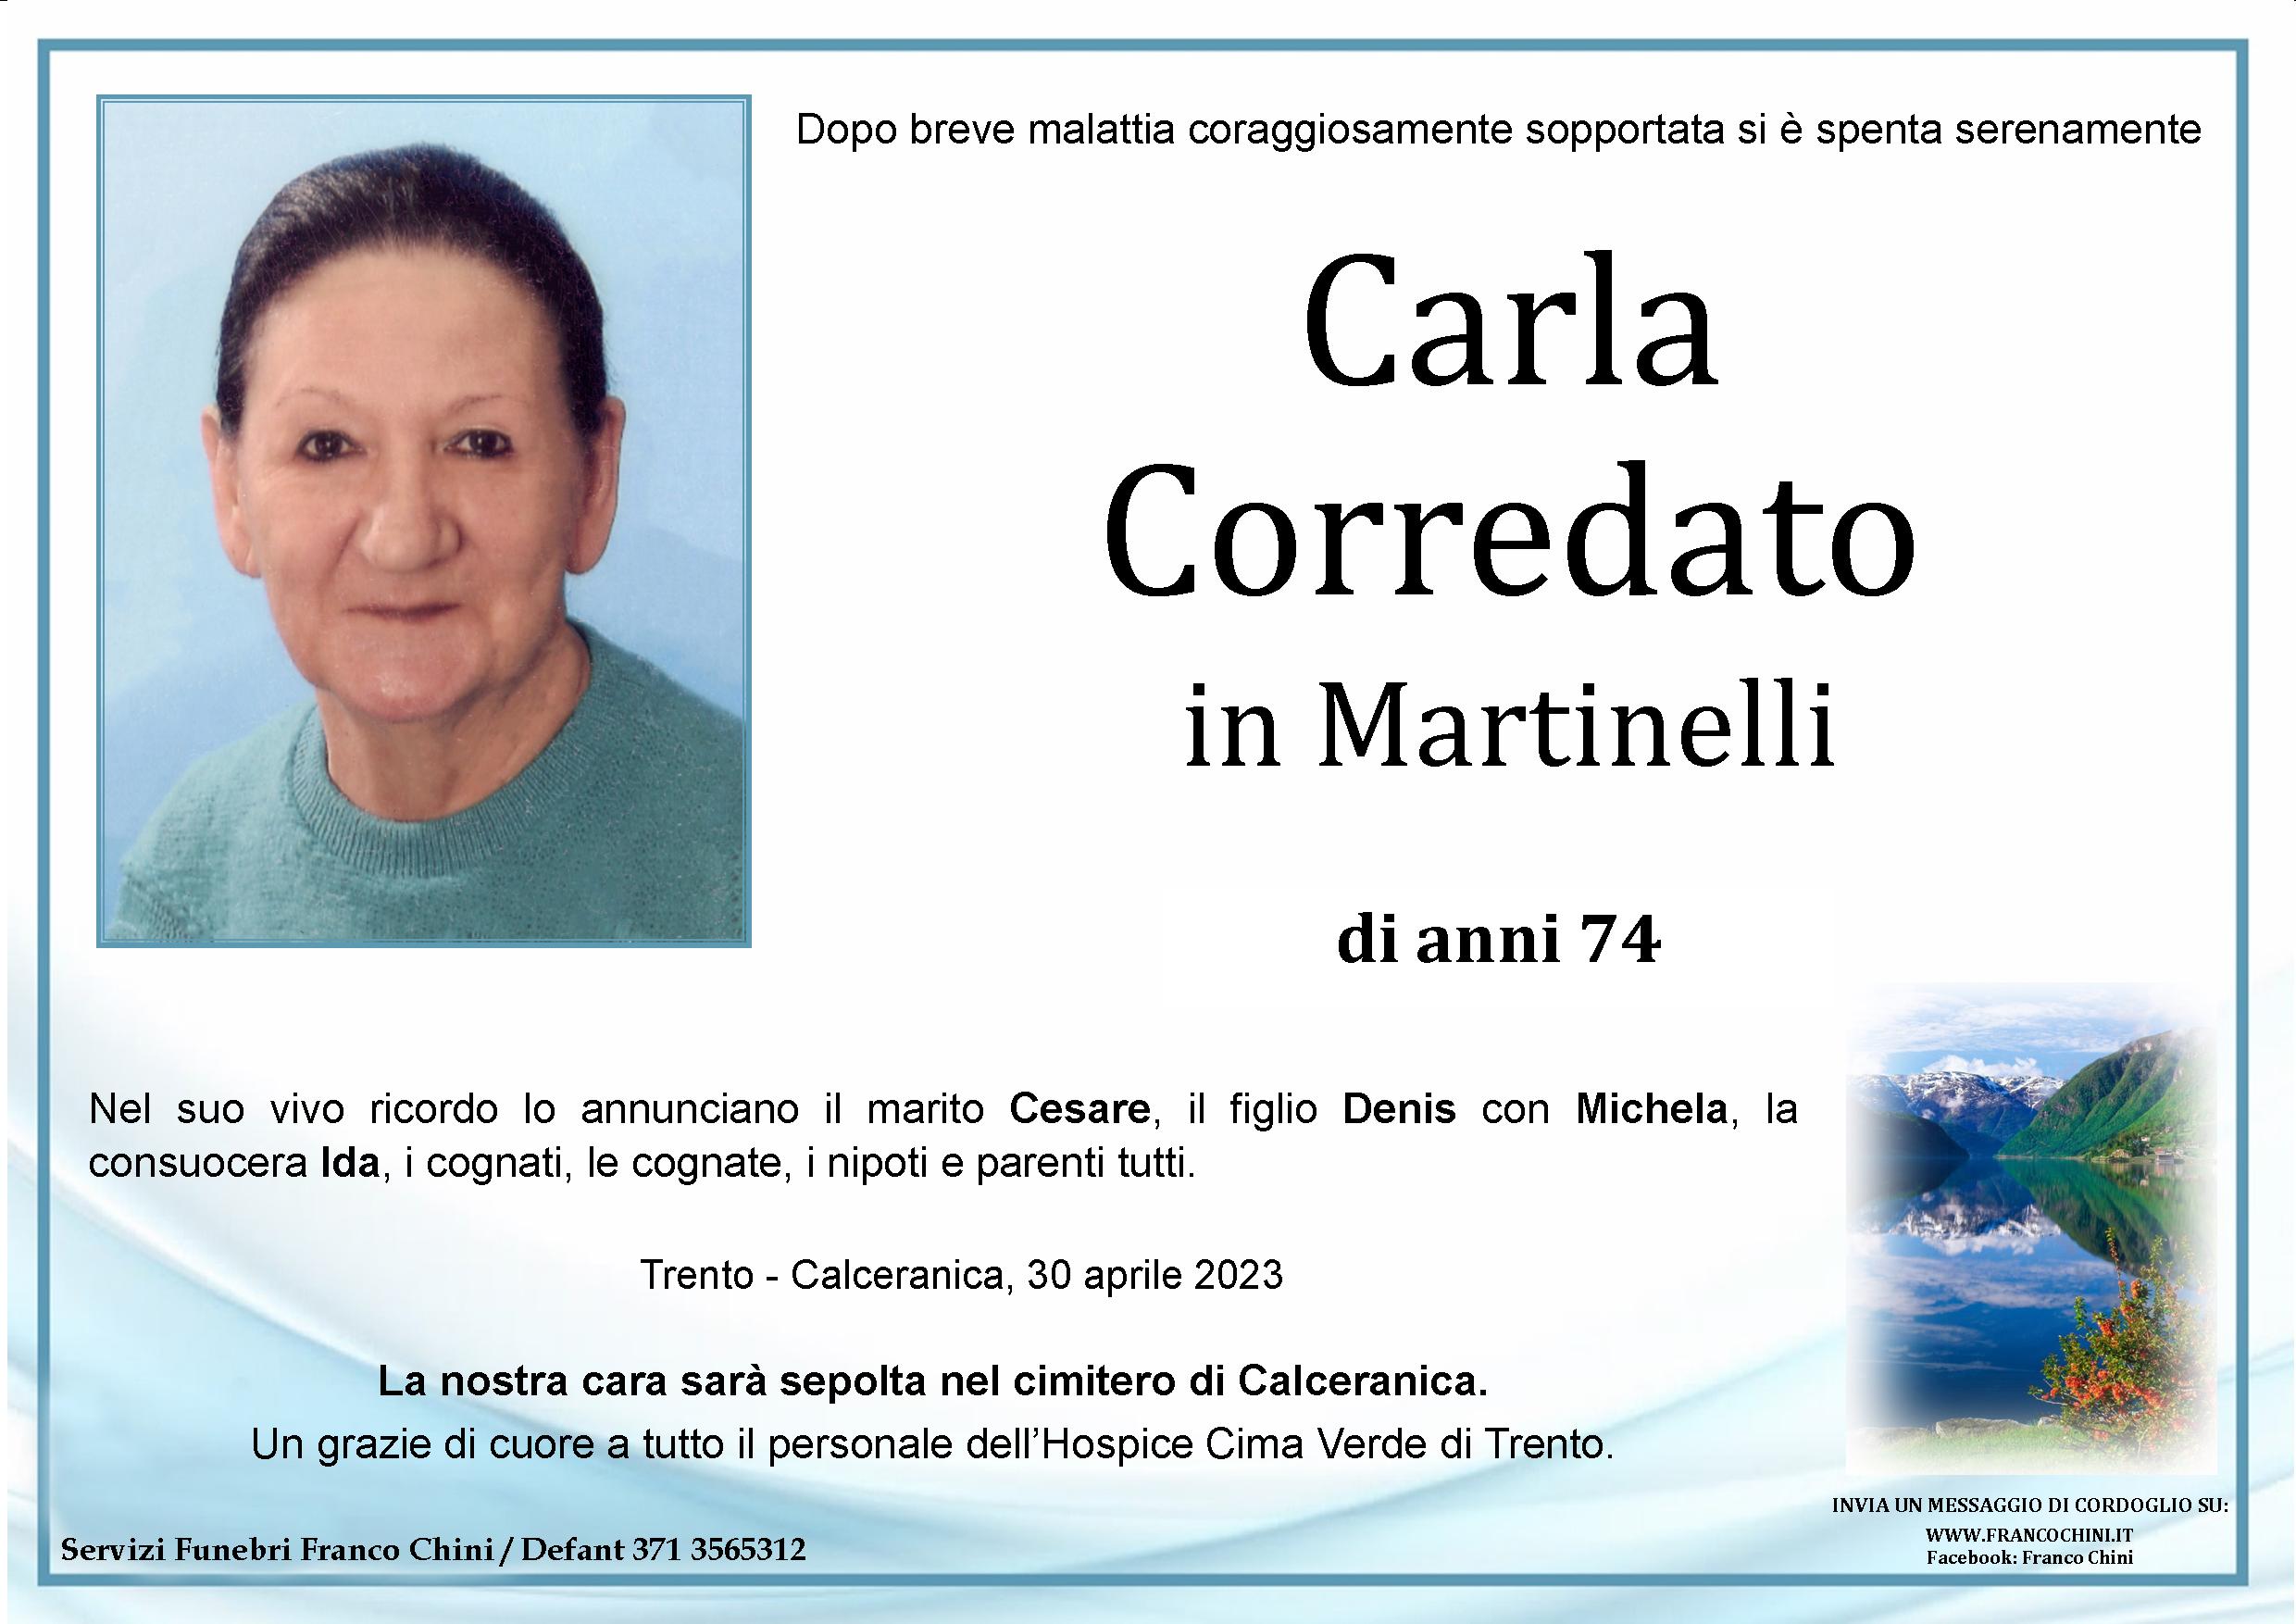 Carla Corredato